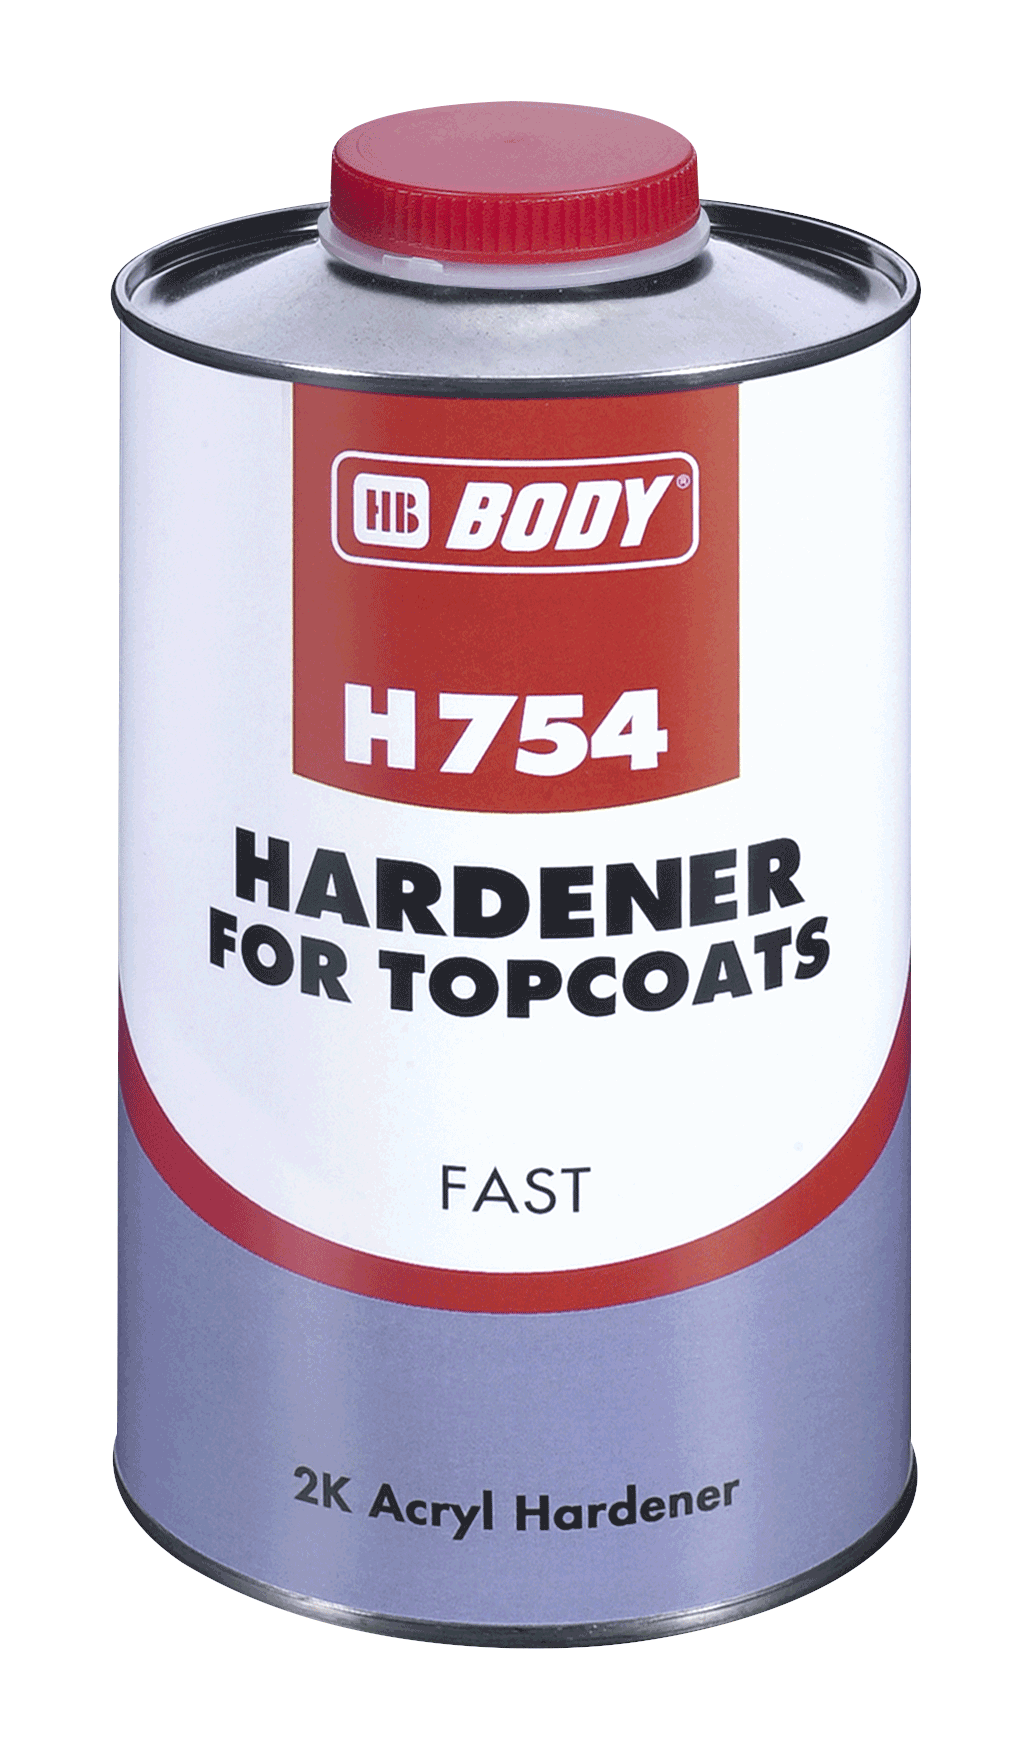 HB BODY Body 754 Hardener fast  5L